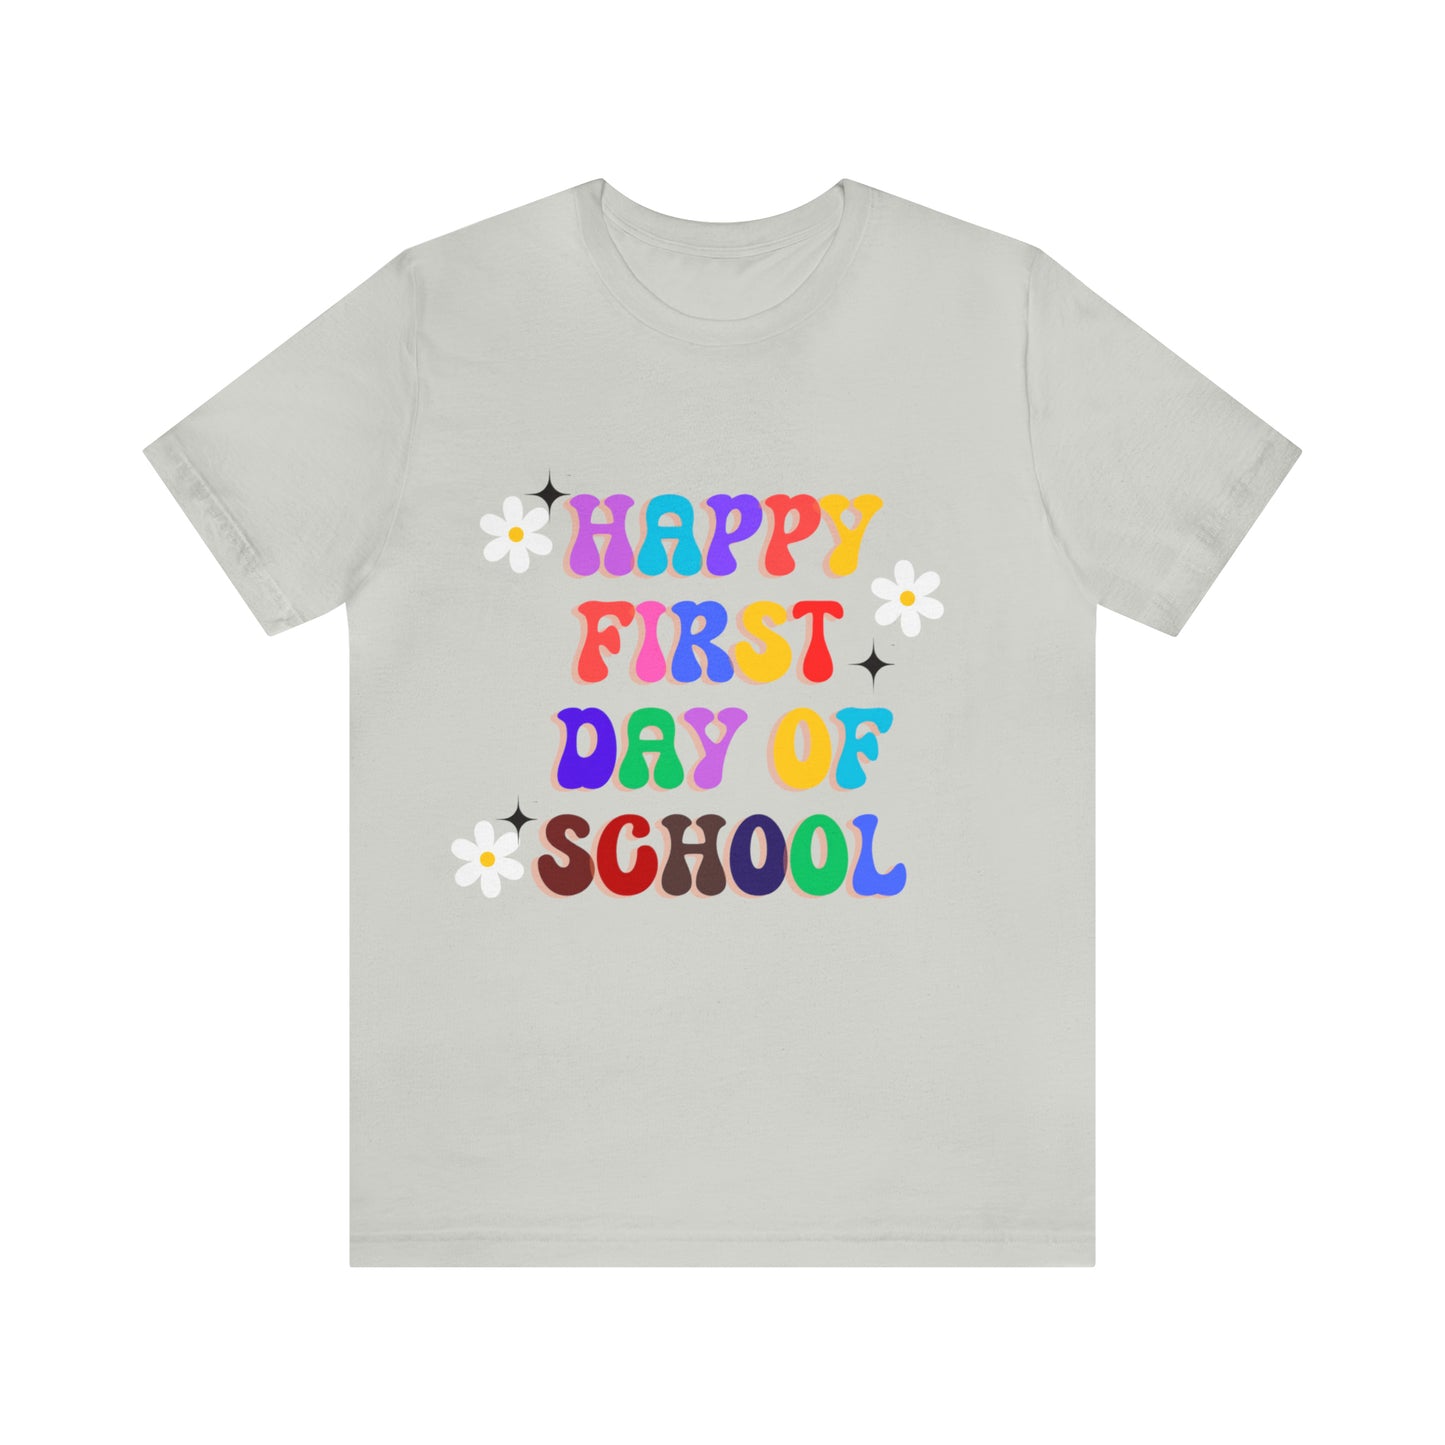 Unisex Jersey Short Sleeve Tee, Retro Teacher Shirts, Back to School Teacher Shirt, First Day of School Shirt for Teachers, Back to School Shirt Teacher Gifts